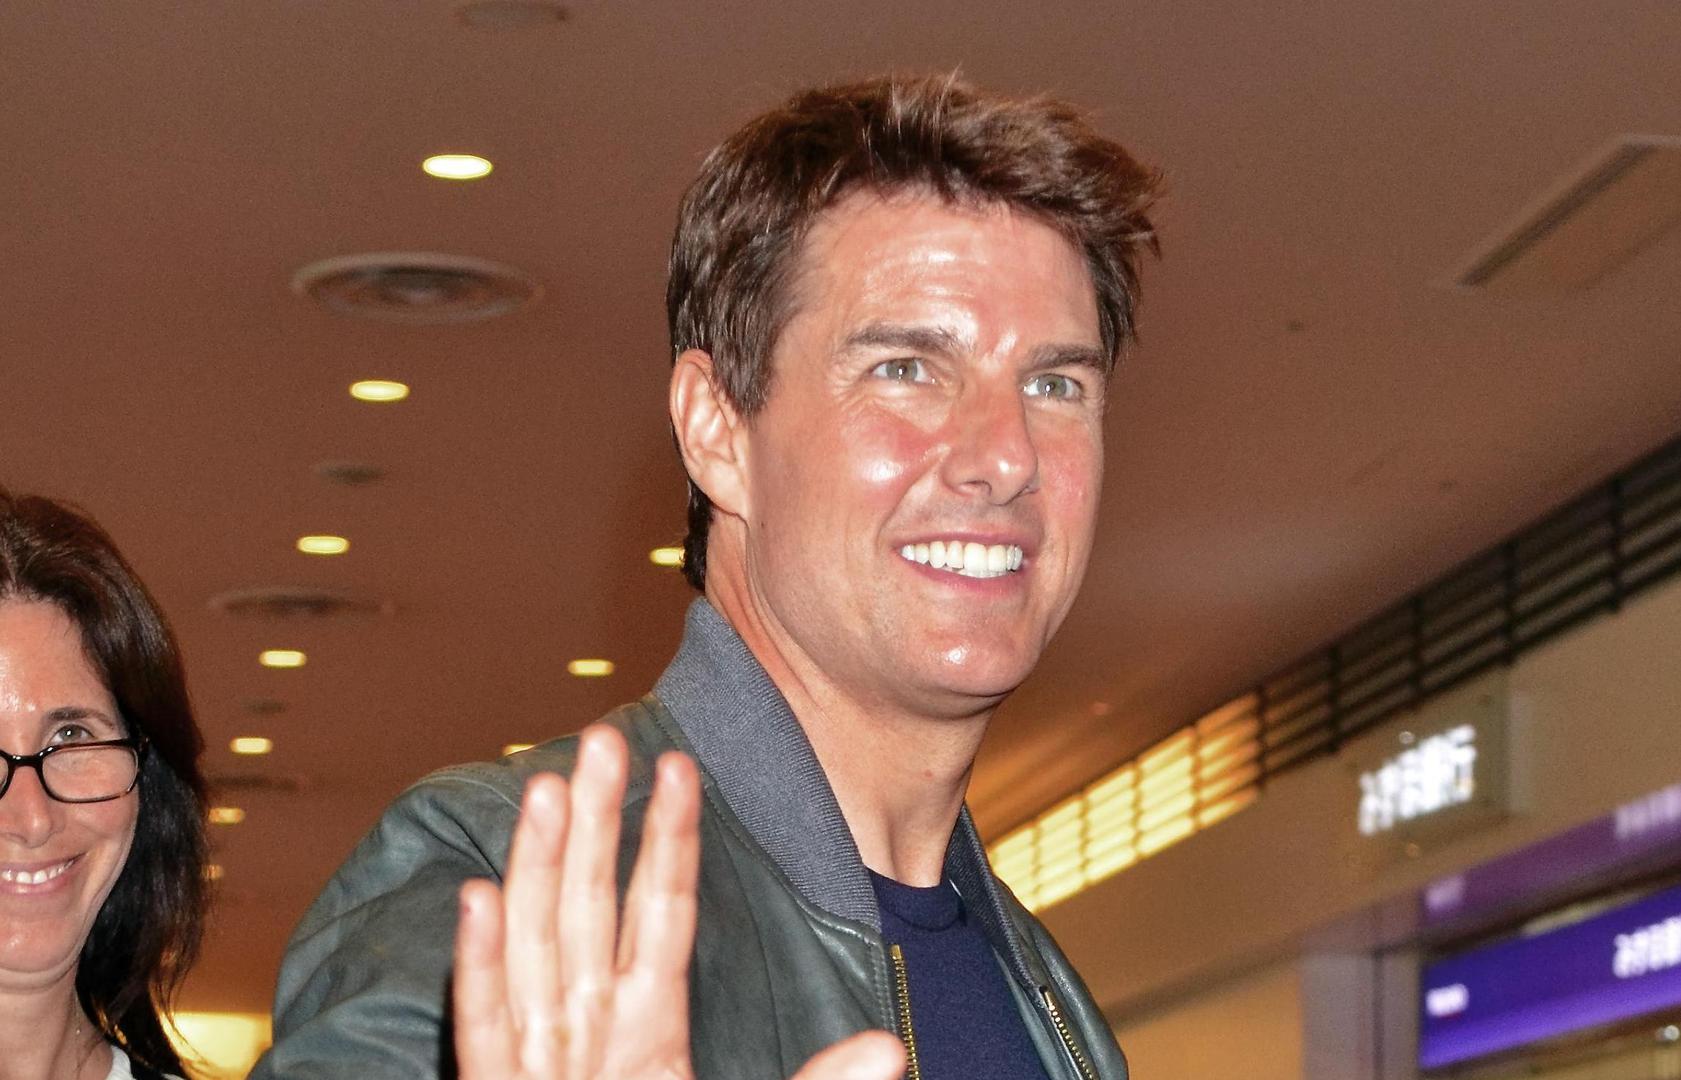 Tom Cruise tumači i ulogu Jacka Reachera u novom seriju kriminalističkih filmova koji su nastali kao ekranizacija romana autora Lee Childa čiji su romani popularni i rado čitani i u Hrvatskoj.
